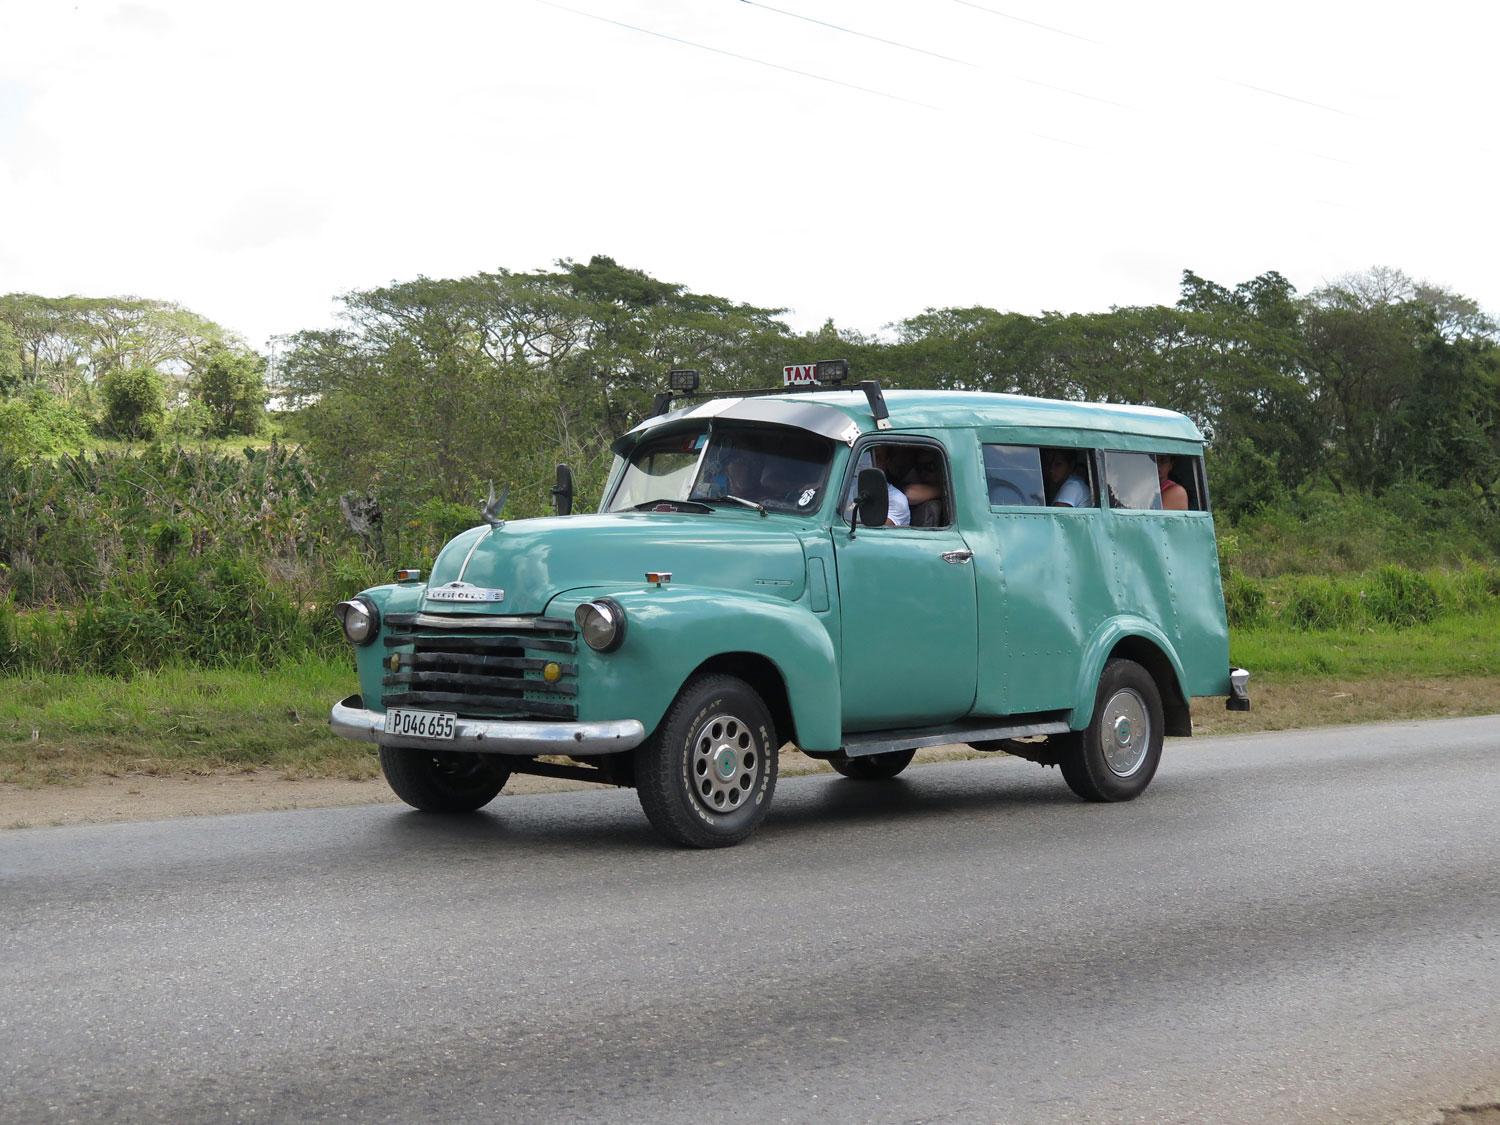 Sådana här Chevrolet Suburban från sent 1940-tal och tidigt femtiotalet är vanliga på landsbygden. Den här verkar vara från 1949, och aningen ombyggd, som det mesta på Kuba. Ingång där bak.